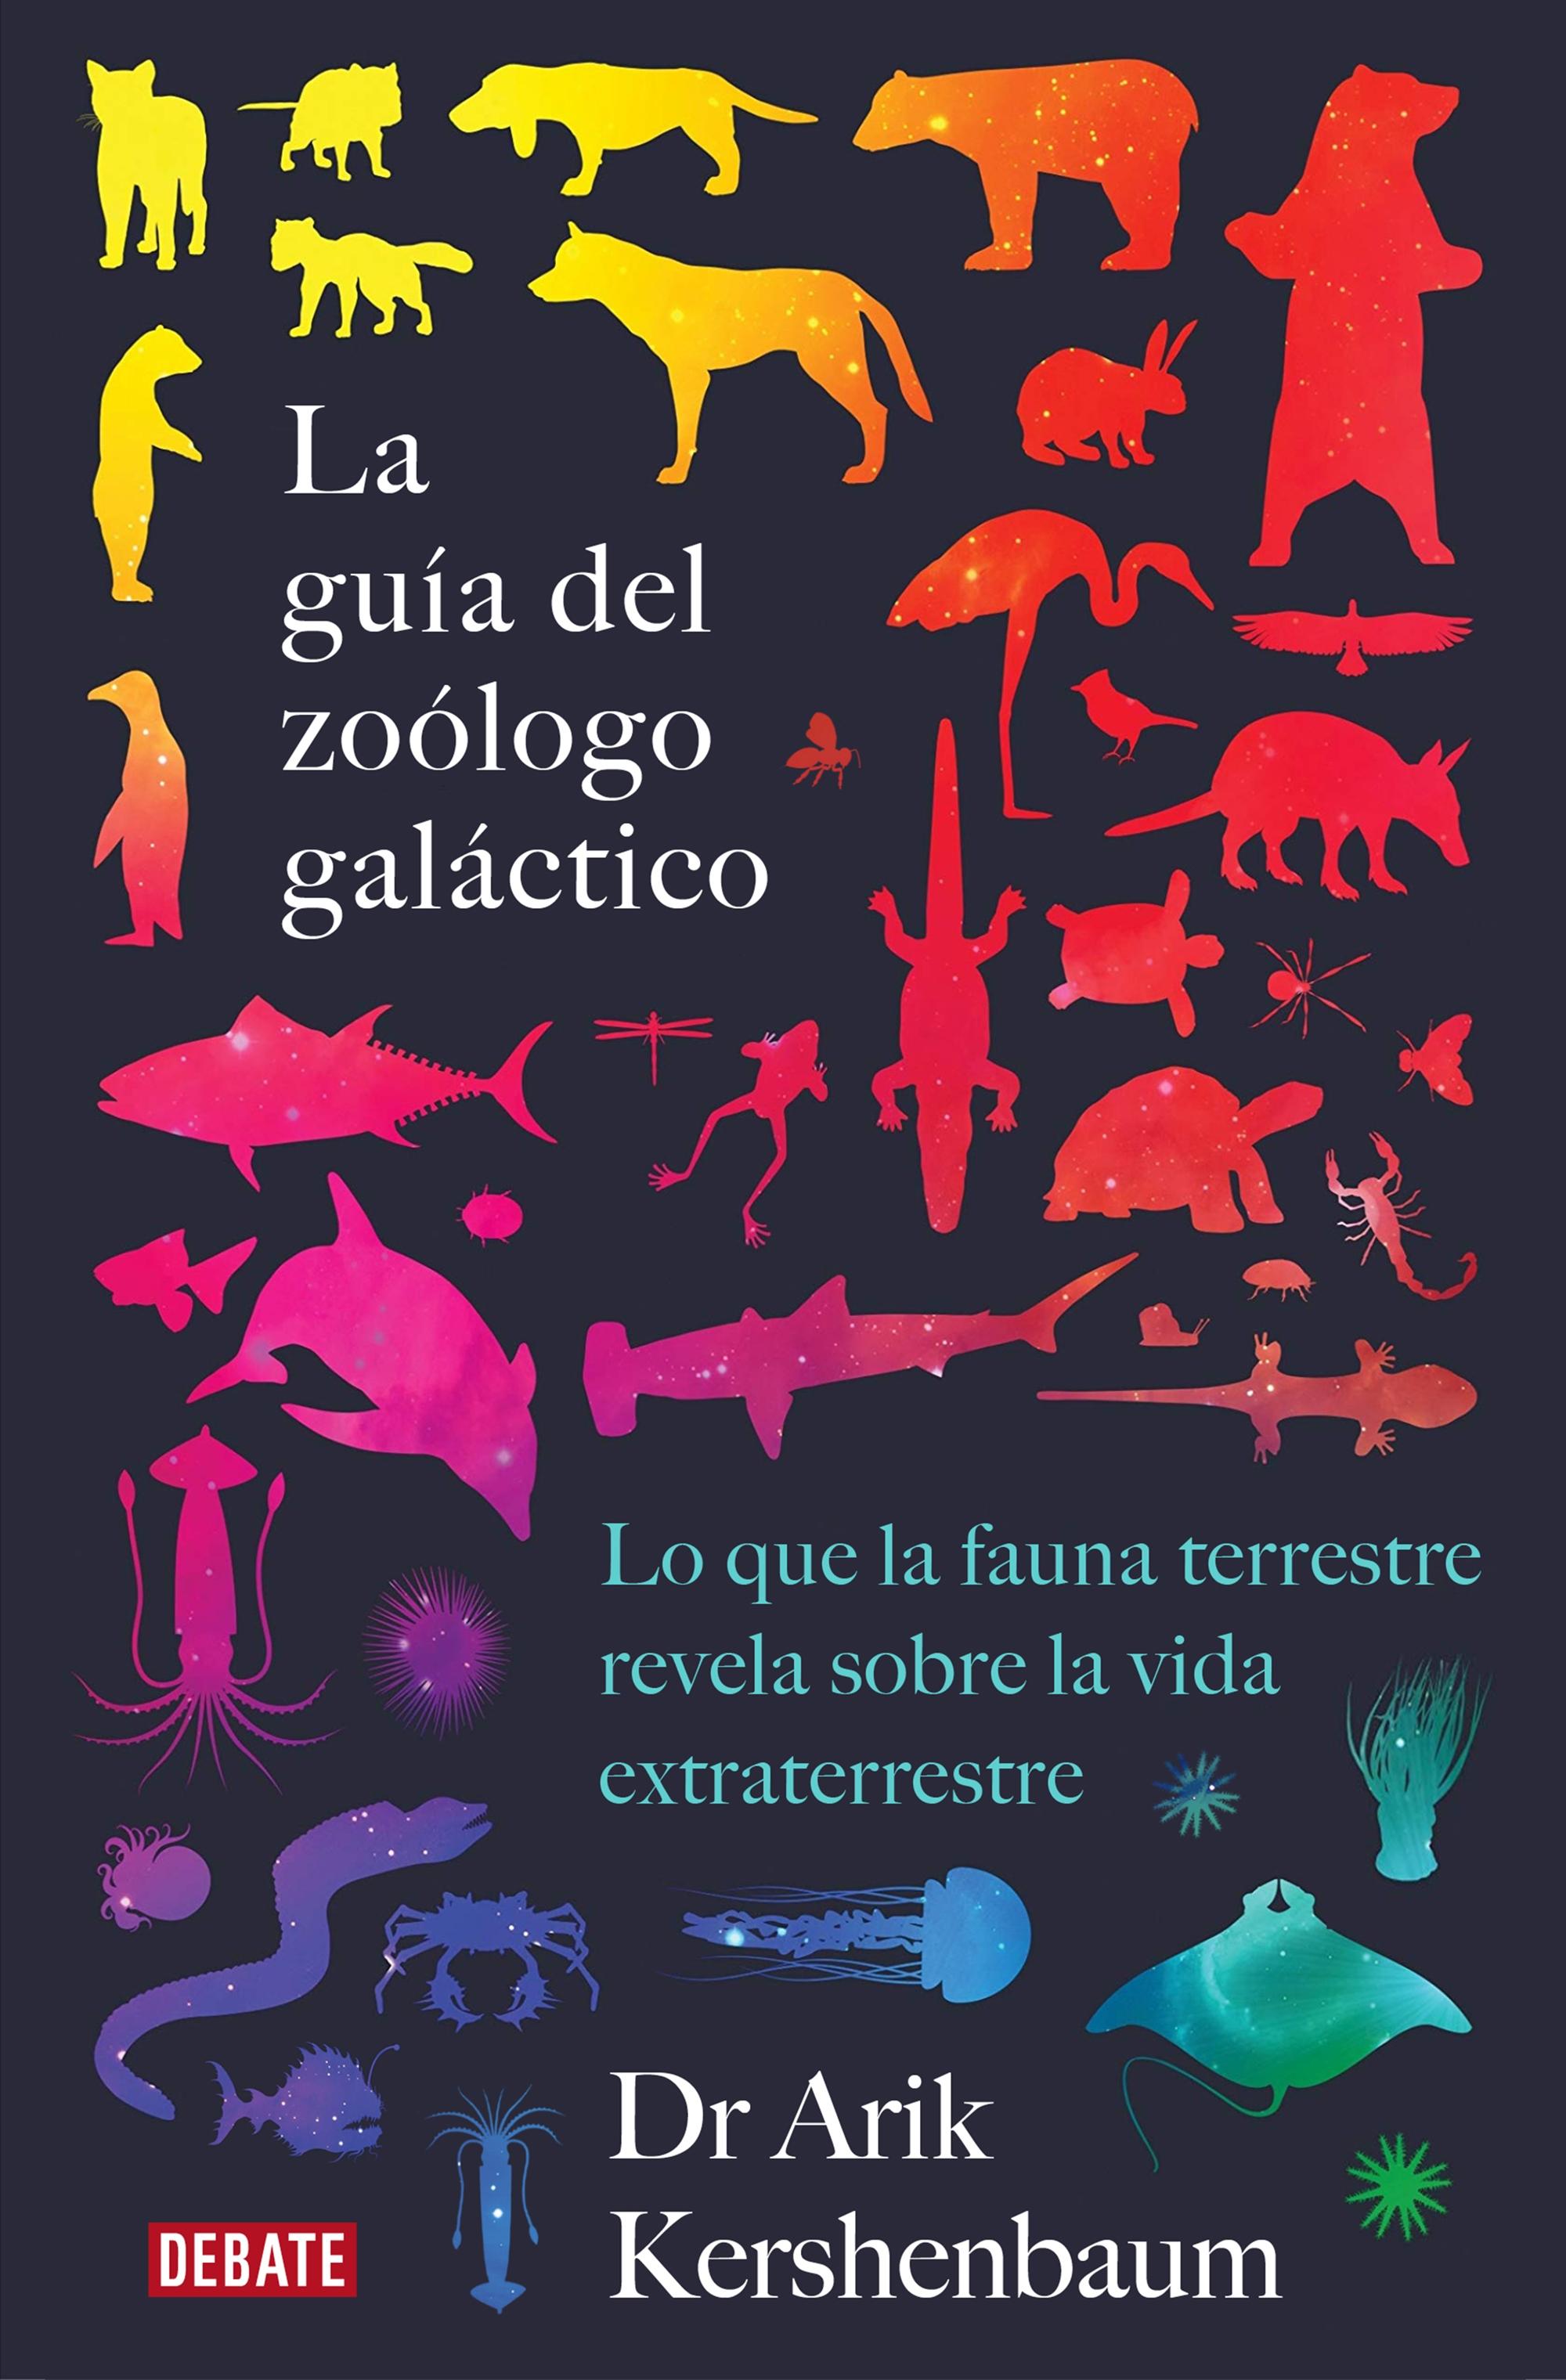 La guía del zoólogo galáctico "LO QUE LA FAUNA TERRESTRE REVELA SOBRE LA VIDA EXTRATERRESTRE"